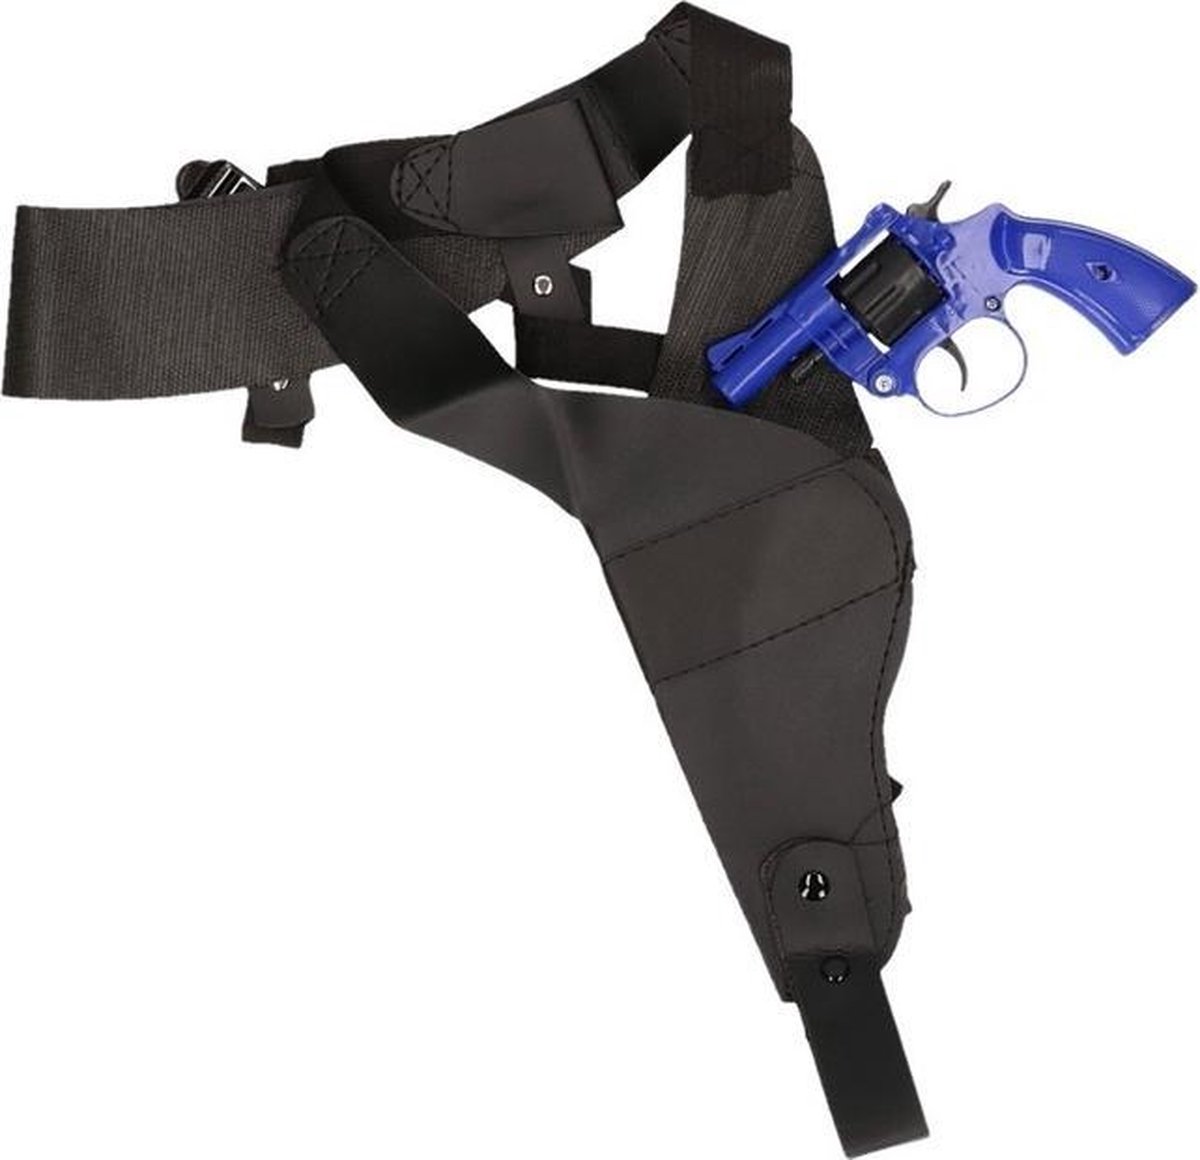 Holster d'épaule noir avec faux pistolet détective